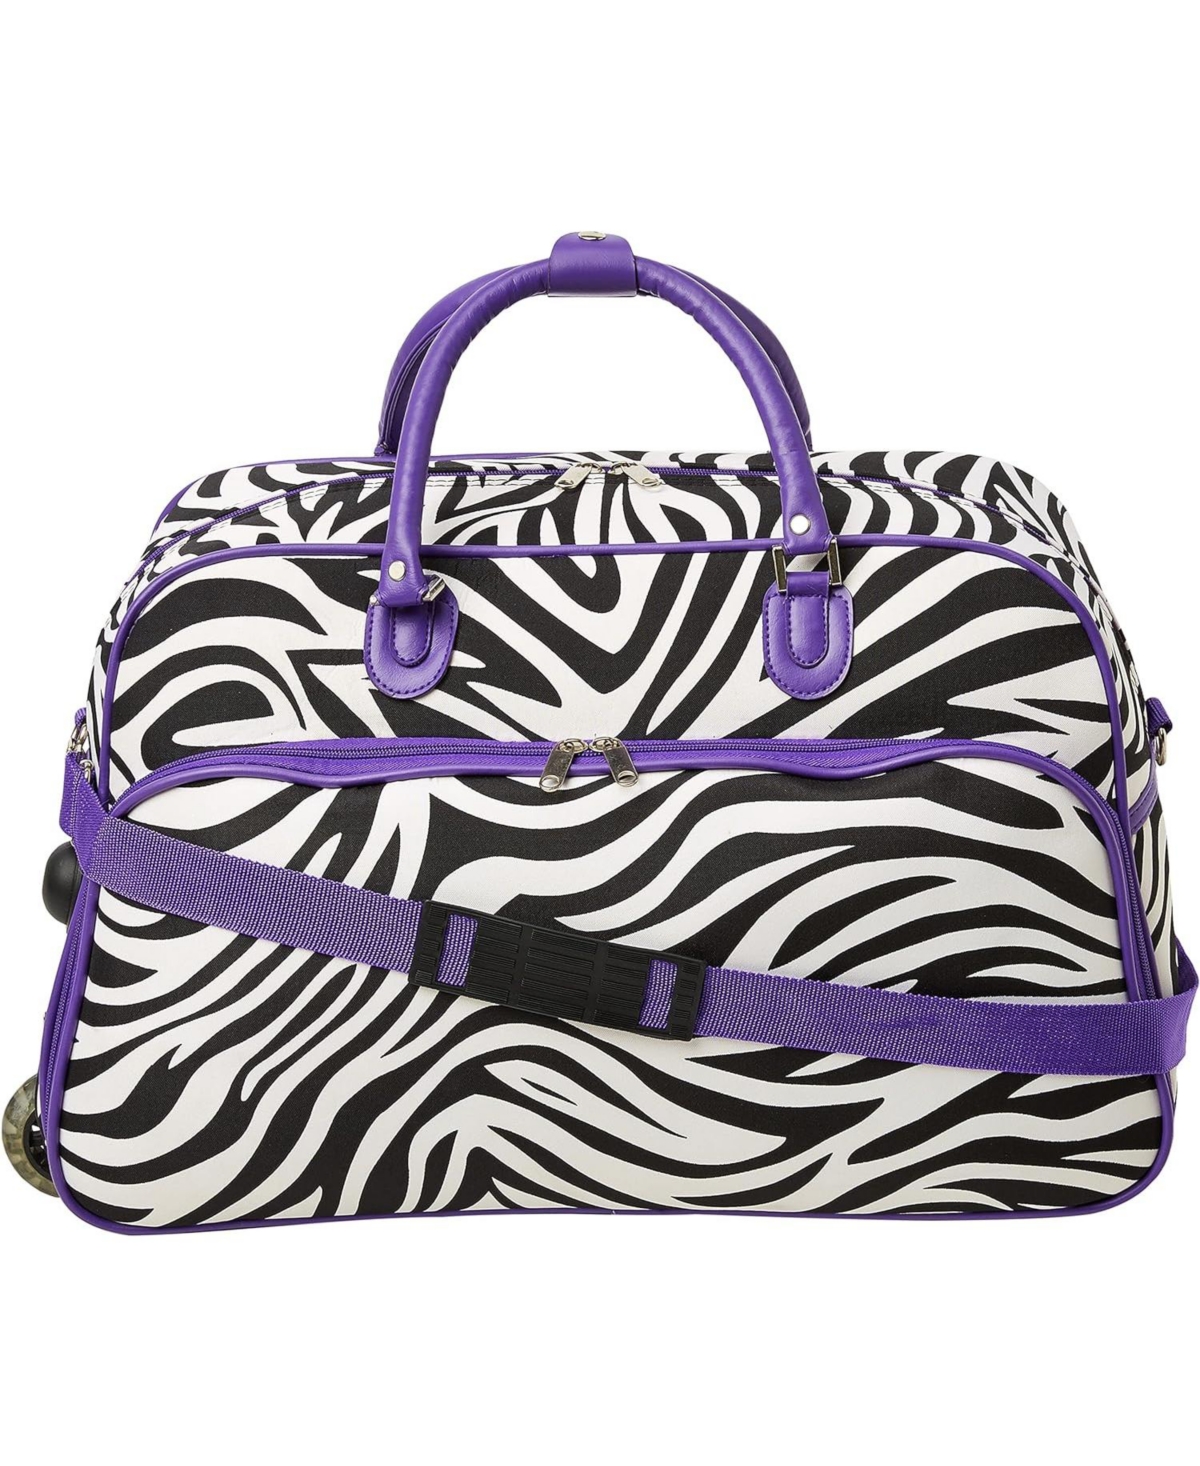 21-Inch Carry-On Rolling Duffel Bag - Dark purple zebra